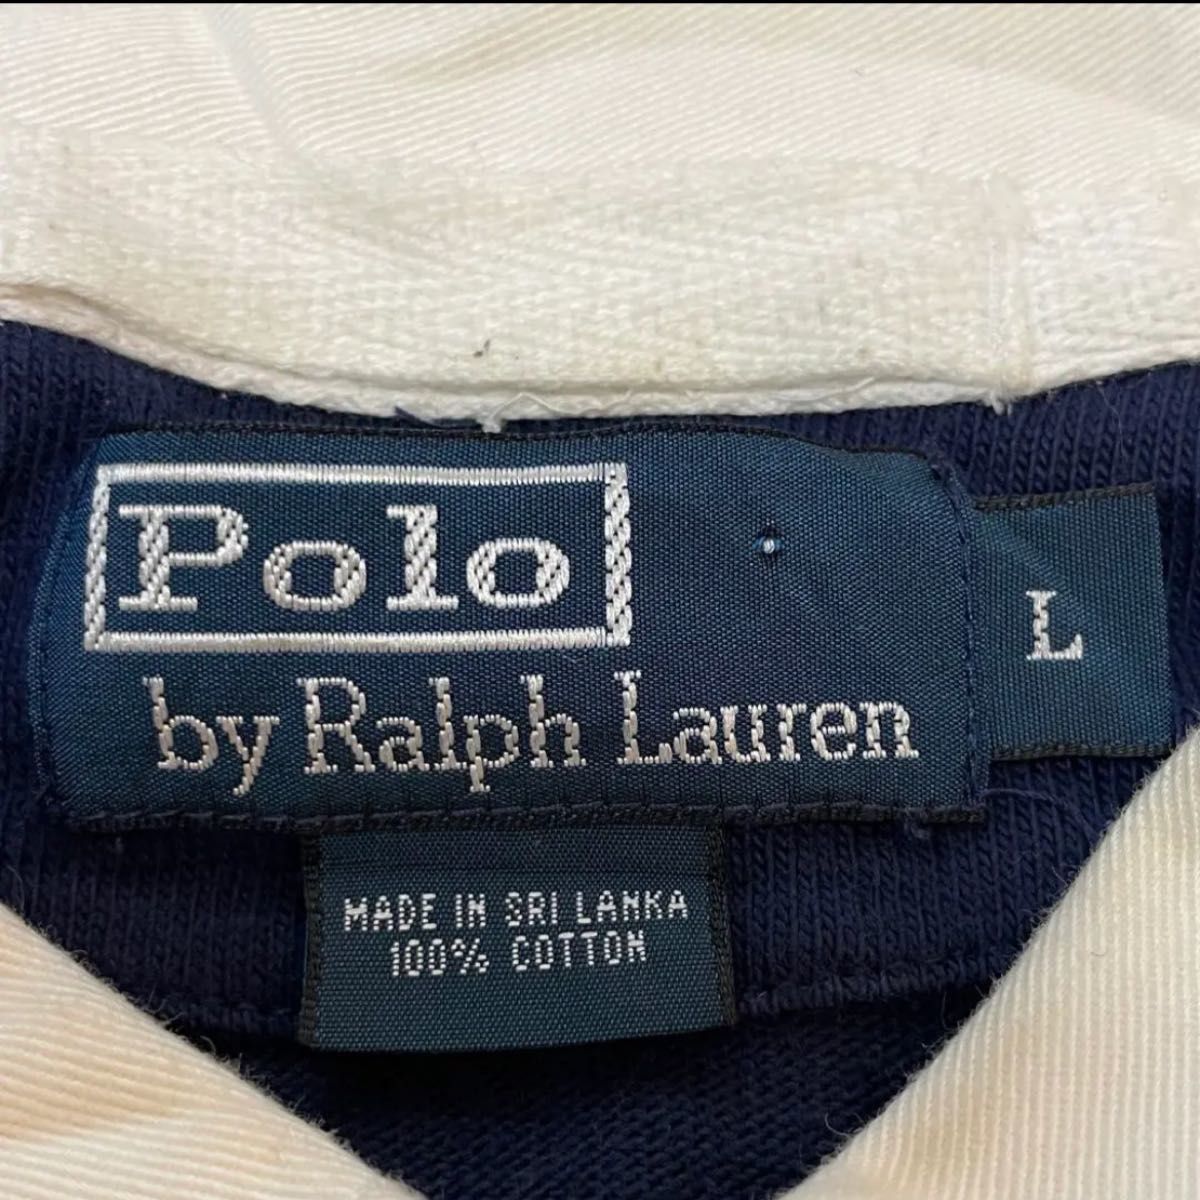 【古着】 Polo Ralph Lauren ラグビージャージ ラガーシャツ